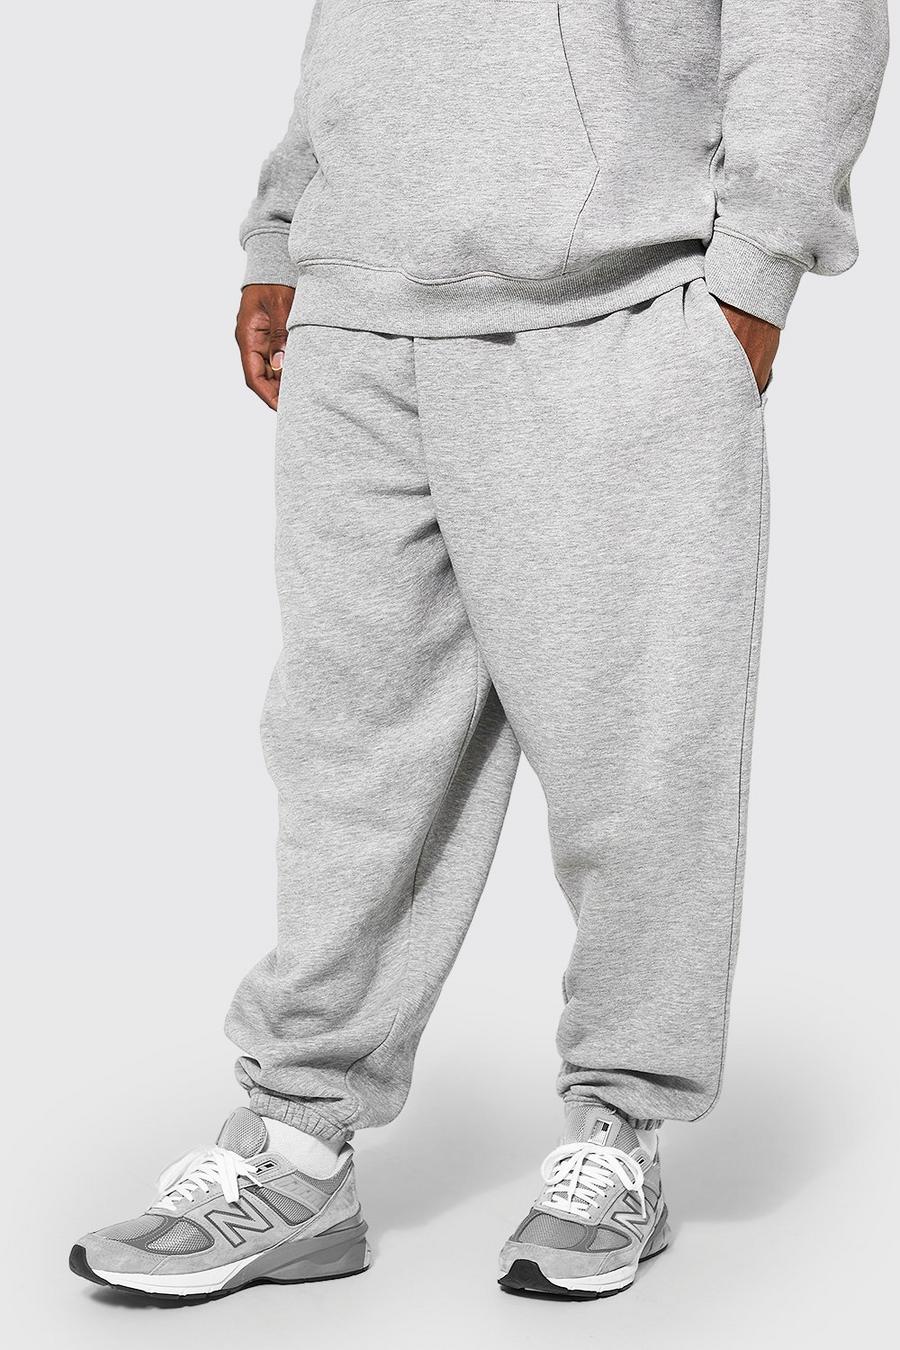 Pantalón deportivo Plus básico holgado con algodón ecológico, Grey marl gris